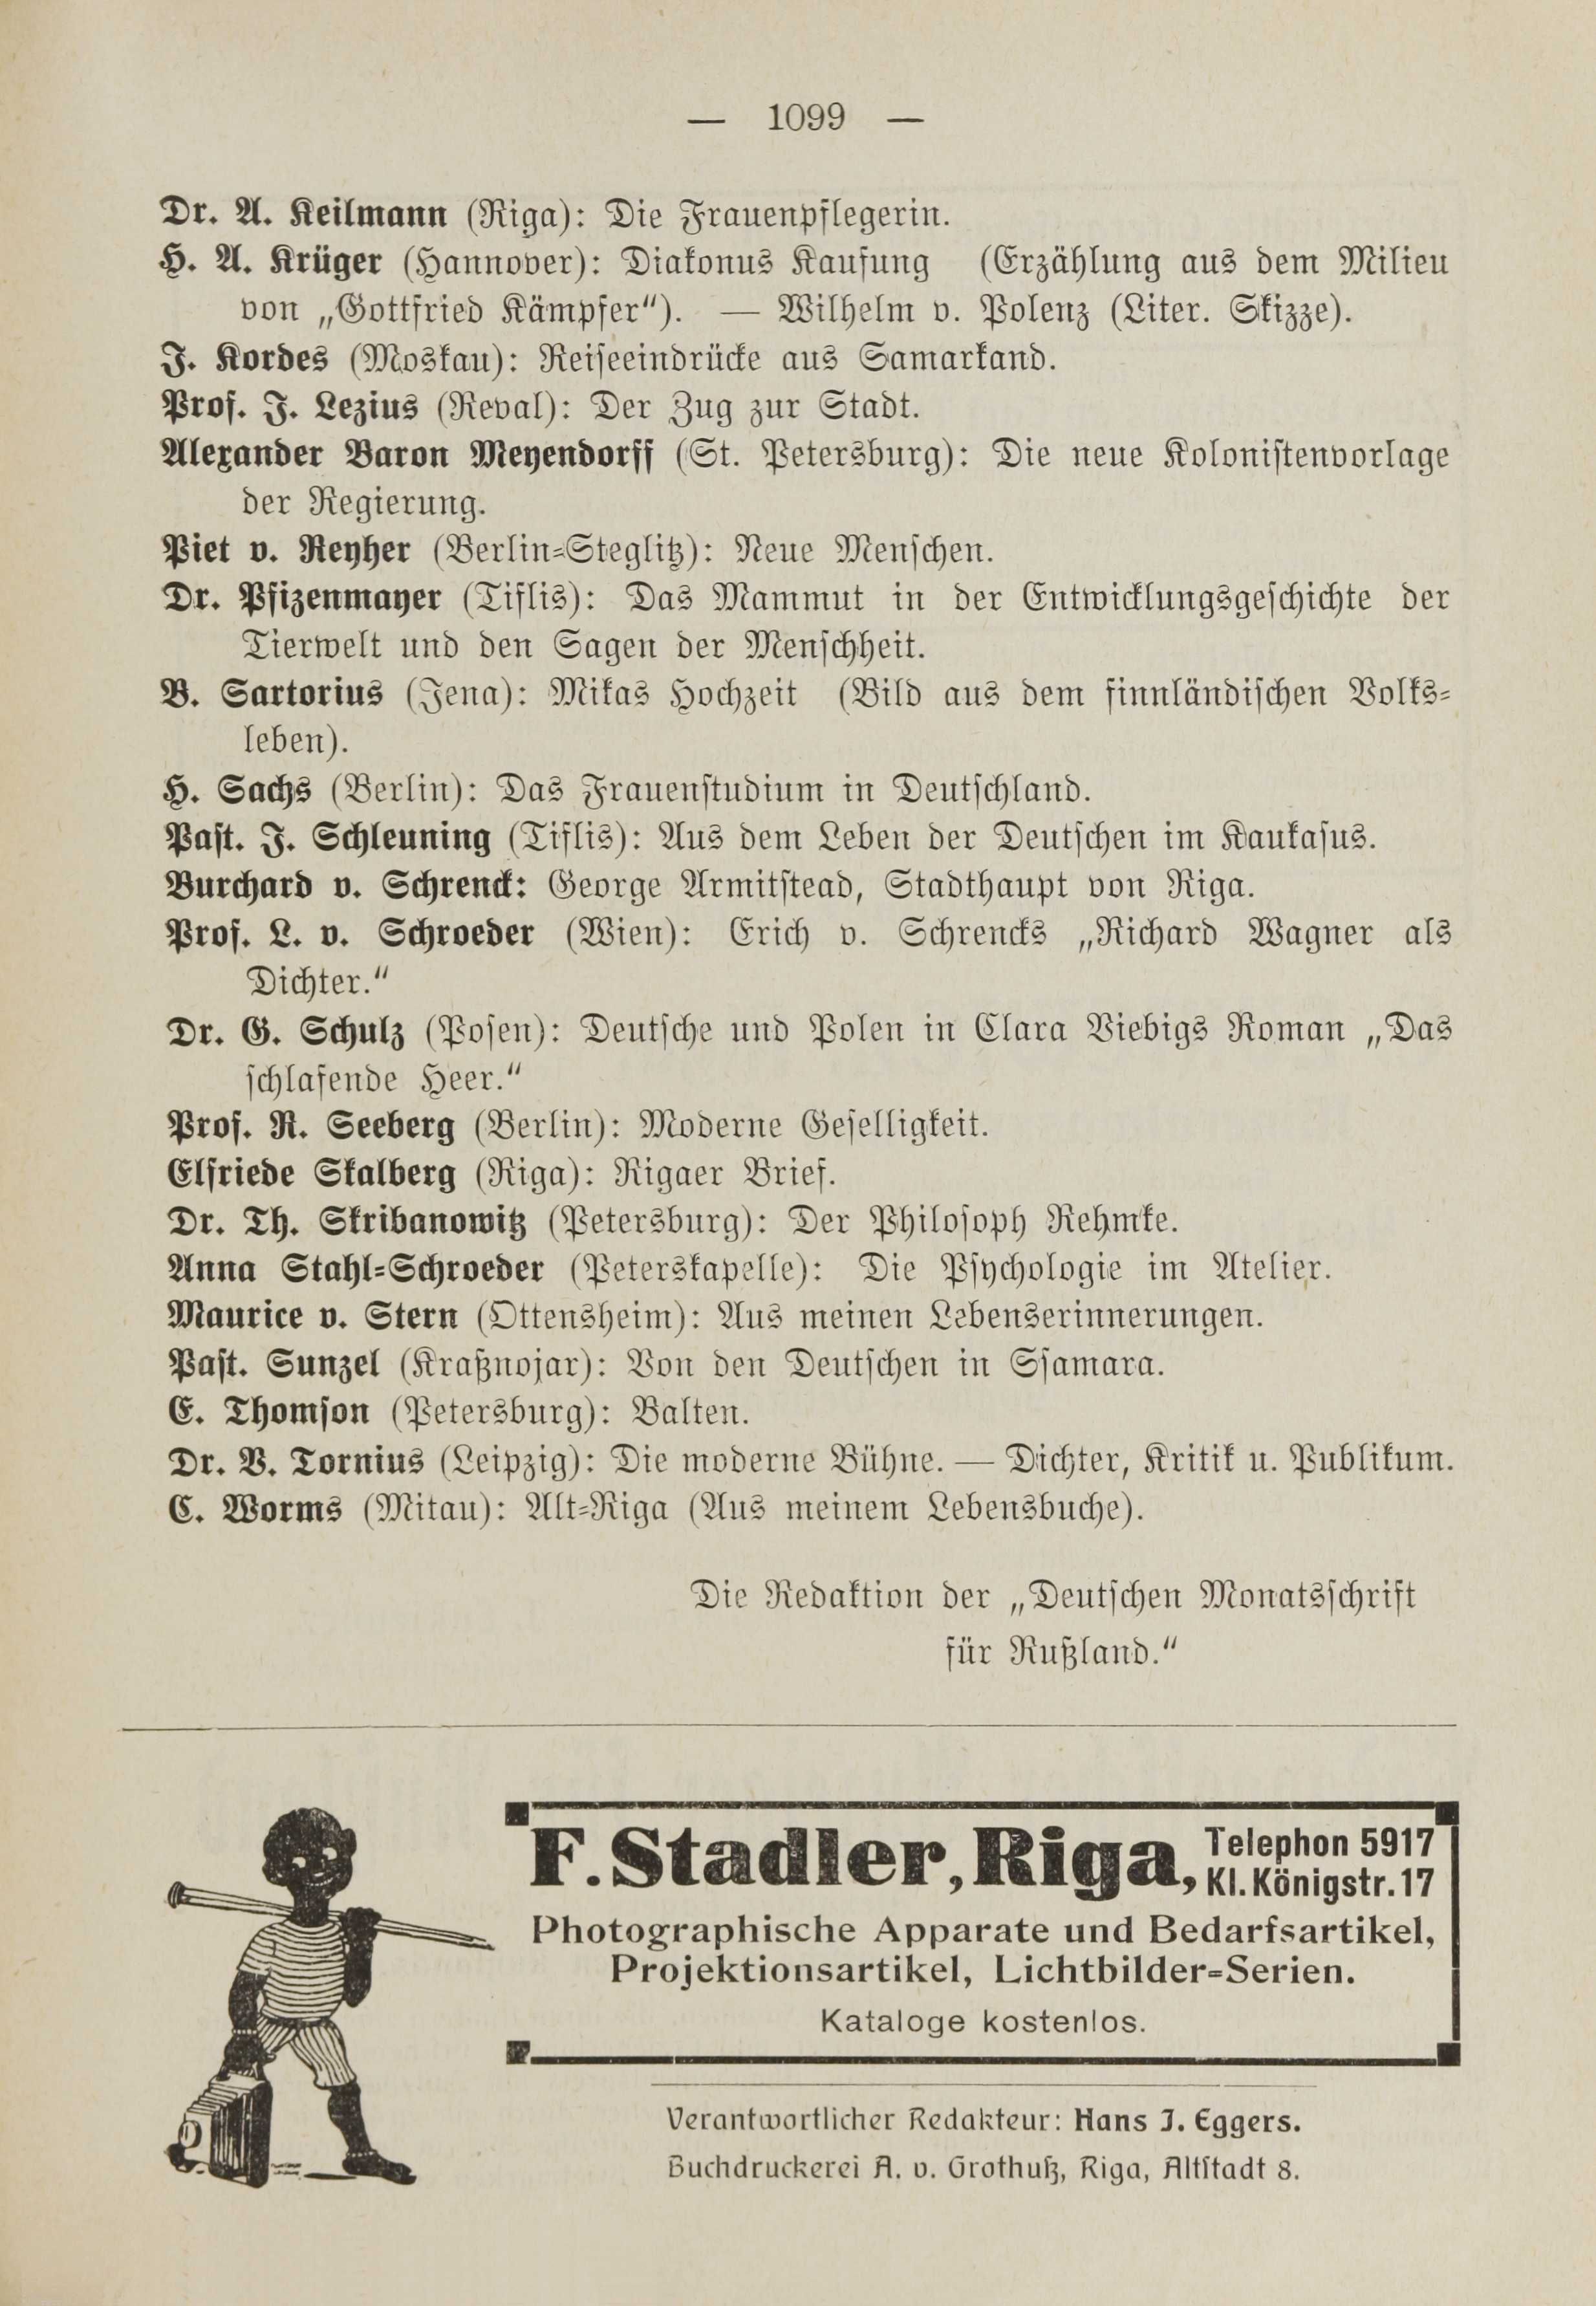 Deutsche Monatsschrift für Russland [1] (1912) | 1107. (1099) Main body of text